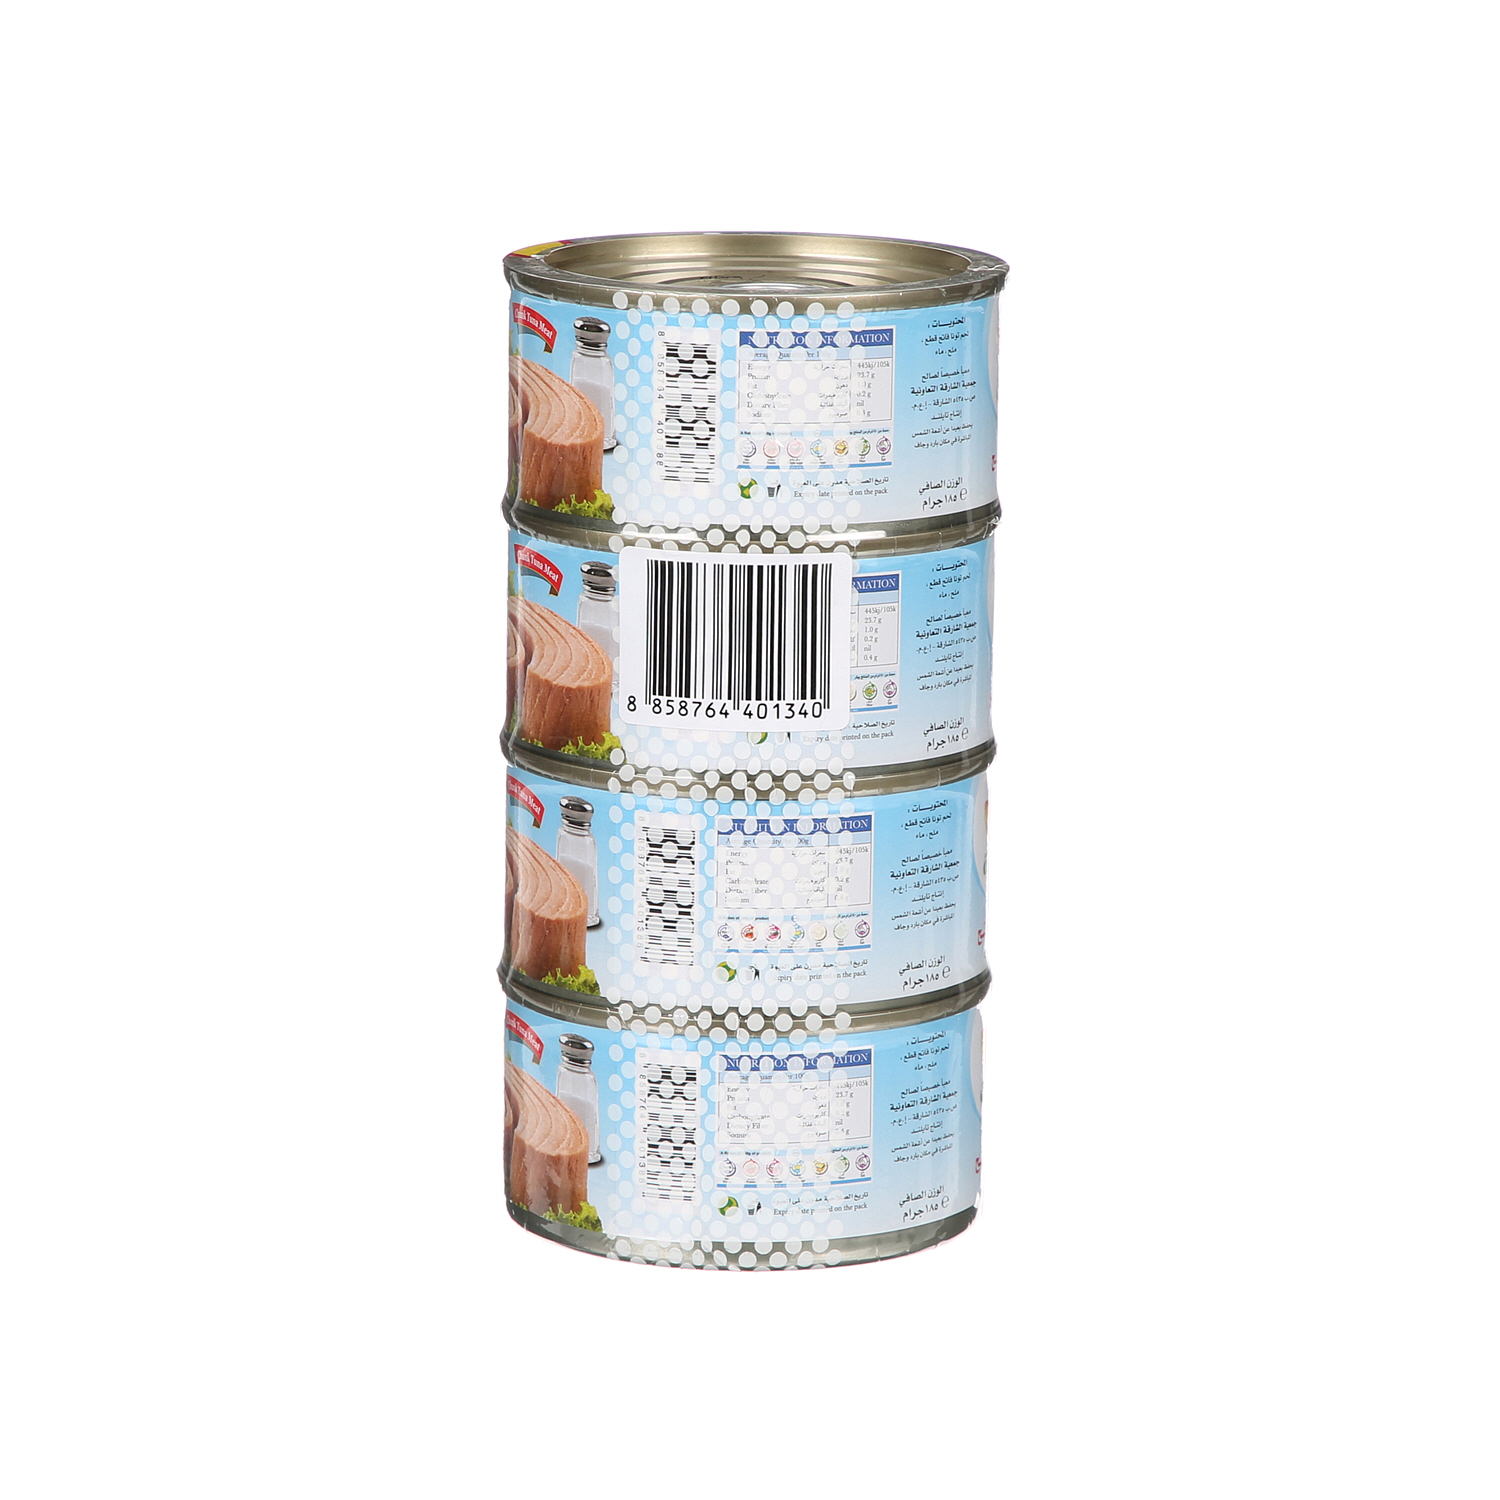 Sharjah Coop Skipjack Tuna Water & Salt 185 g × 4 Pack